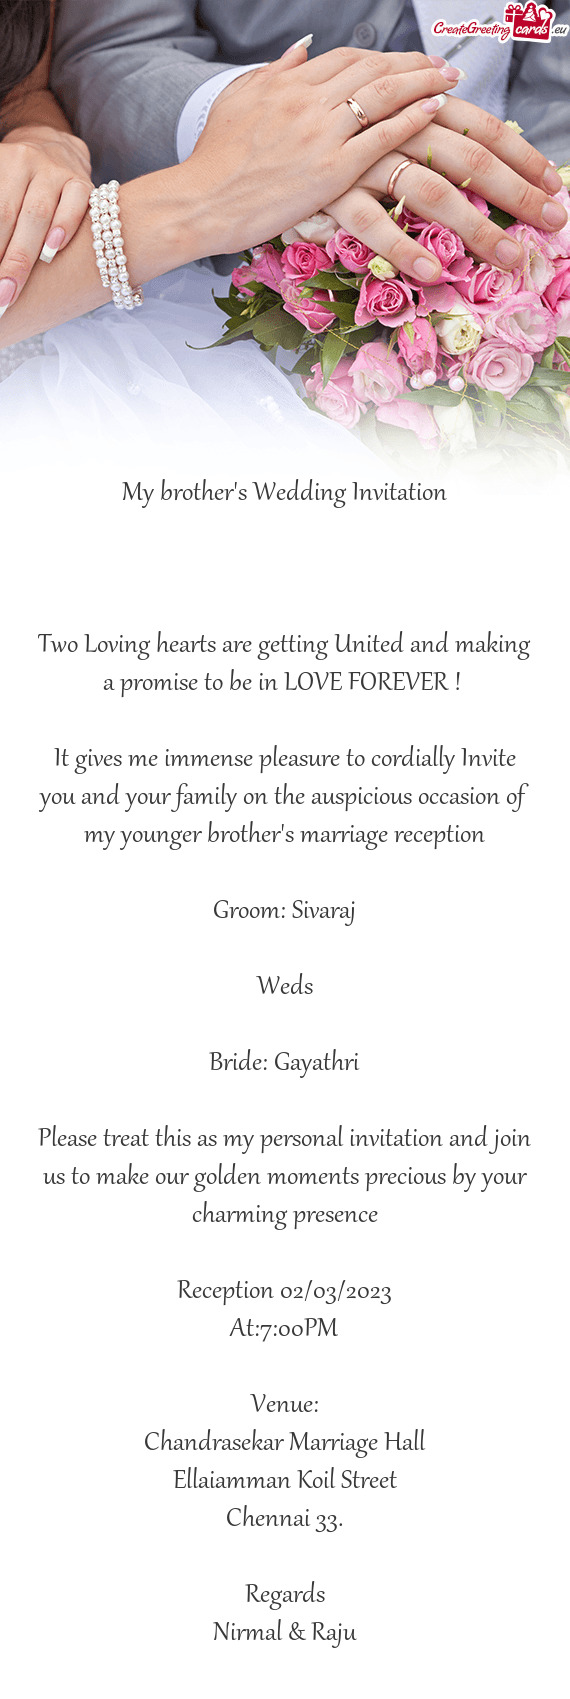 Bride: Gayathri